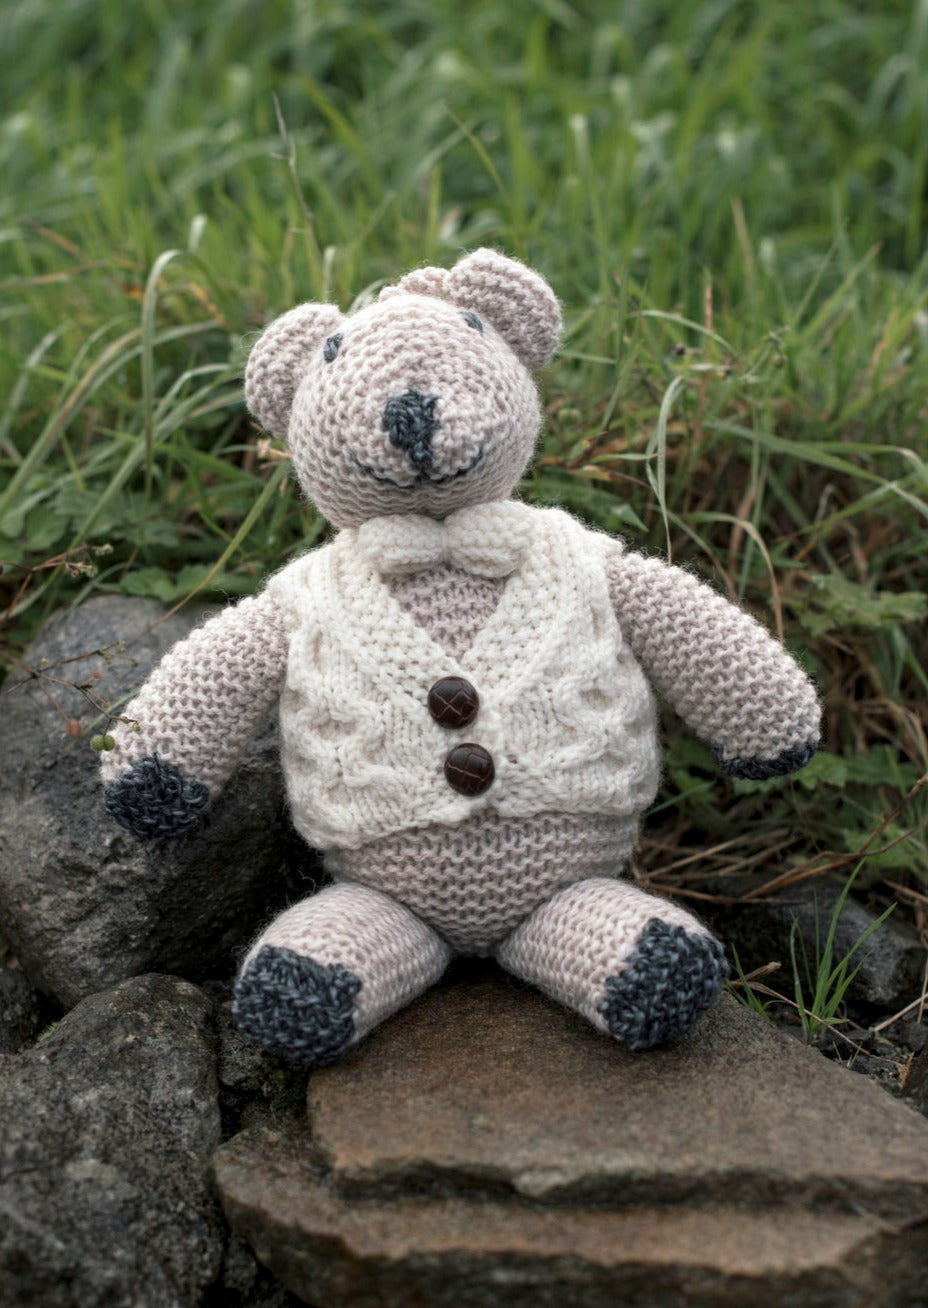 Aran Hand knit Teddy